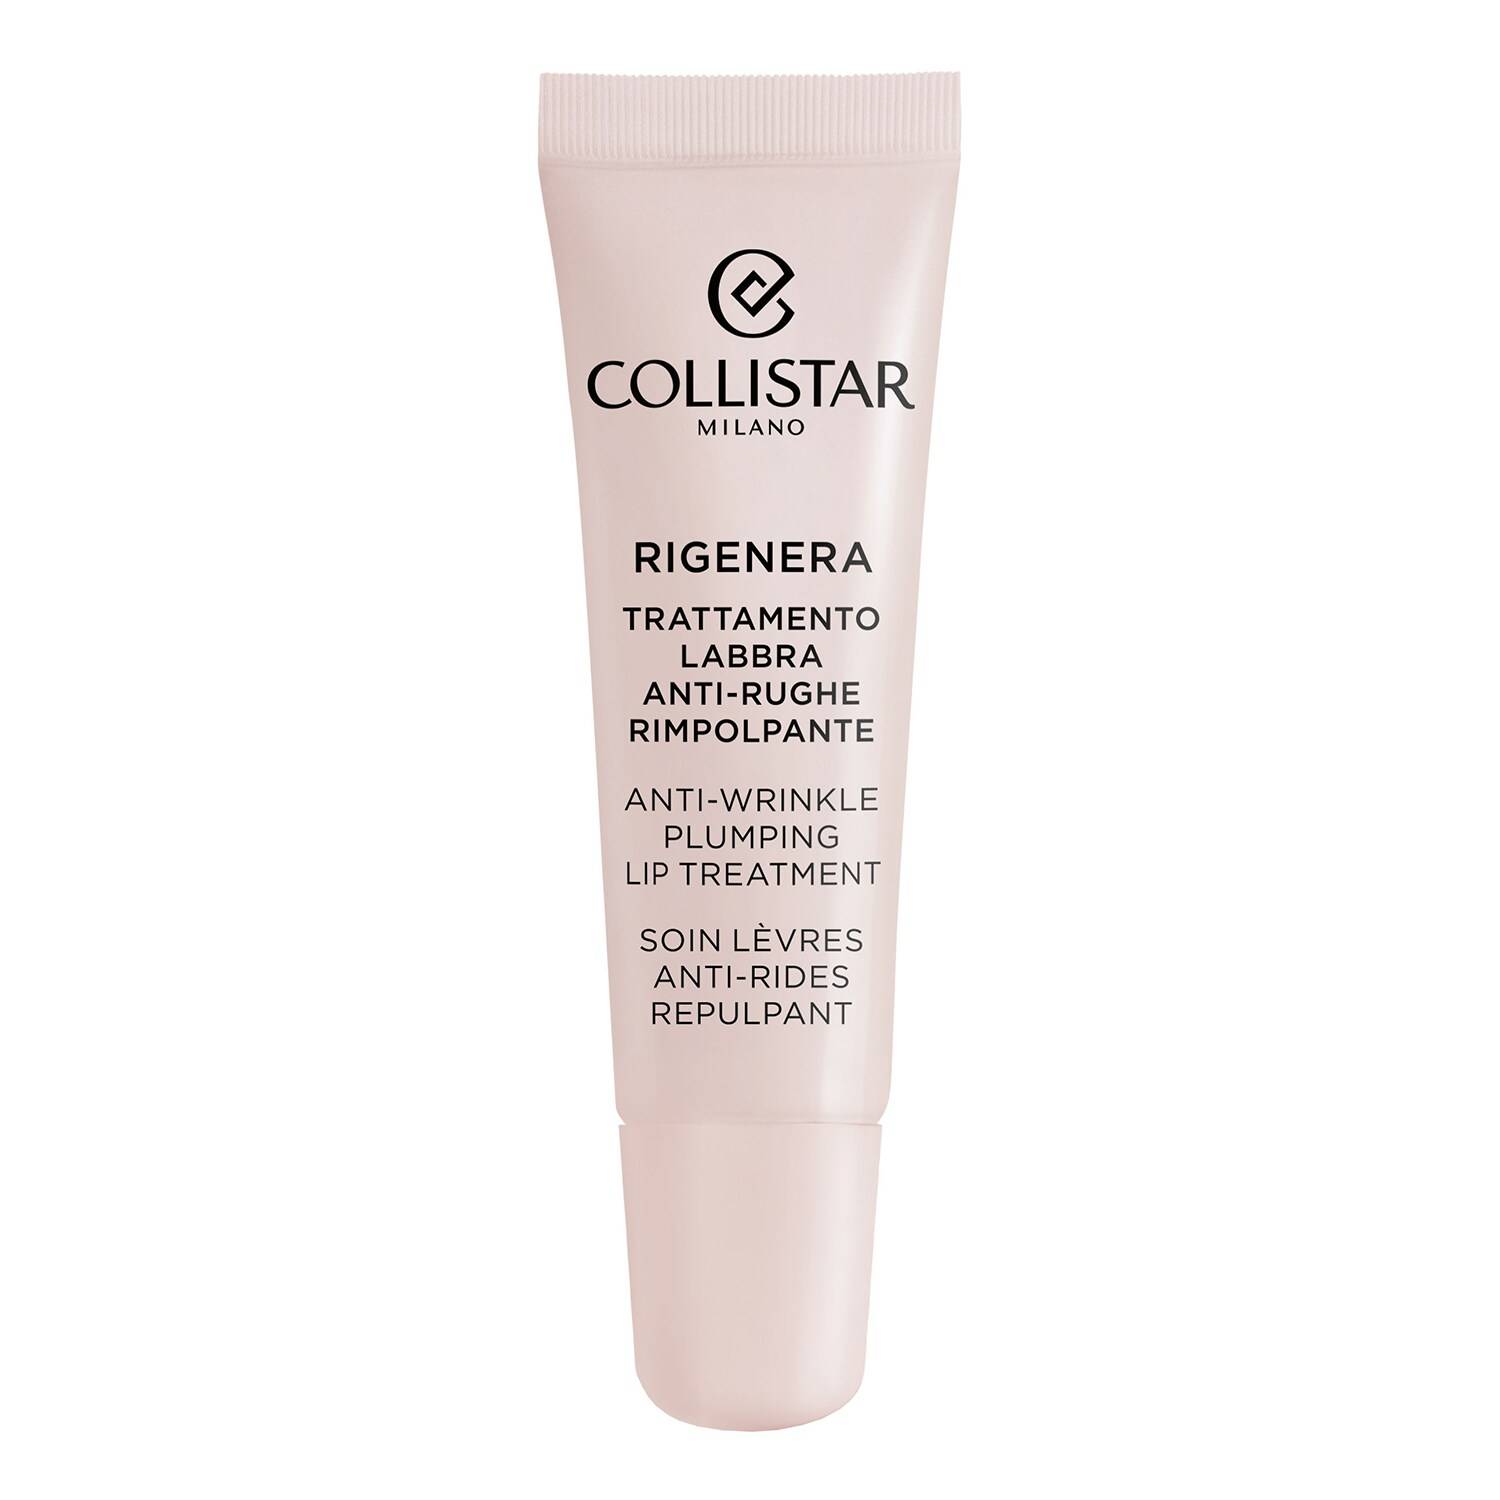 Collistar Rigenera Anti-Wrinkle Plumping Lip Treatment 15Ml